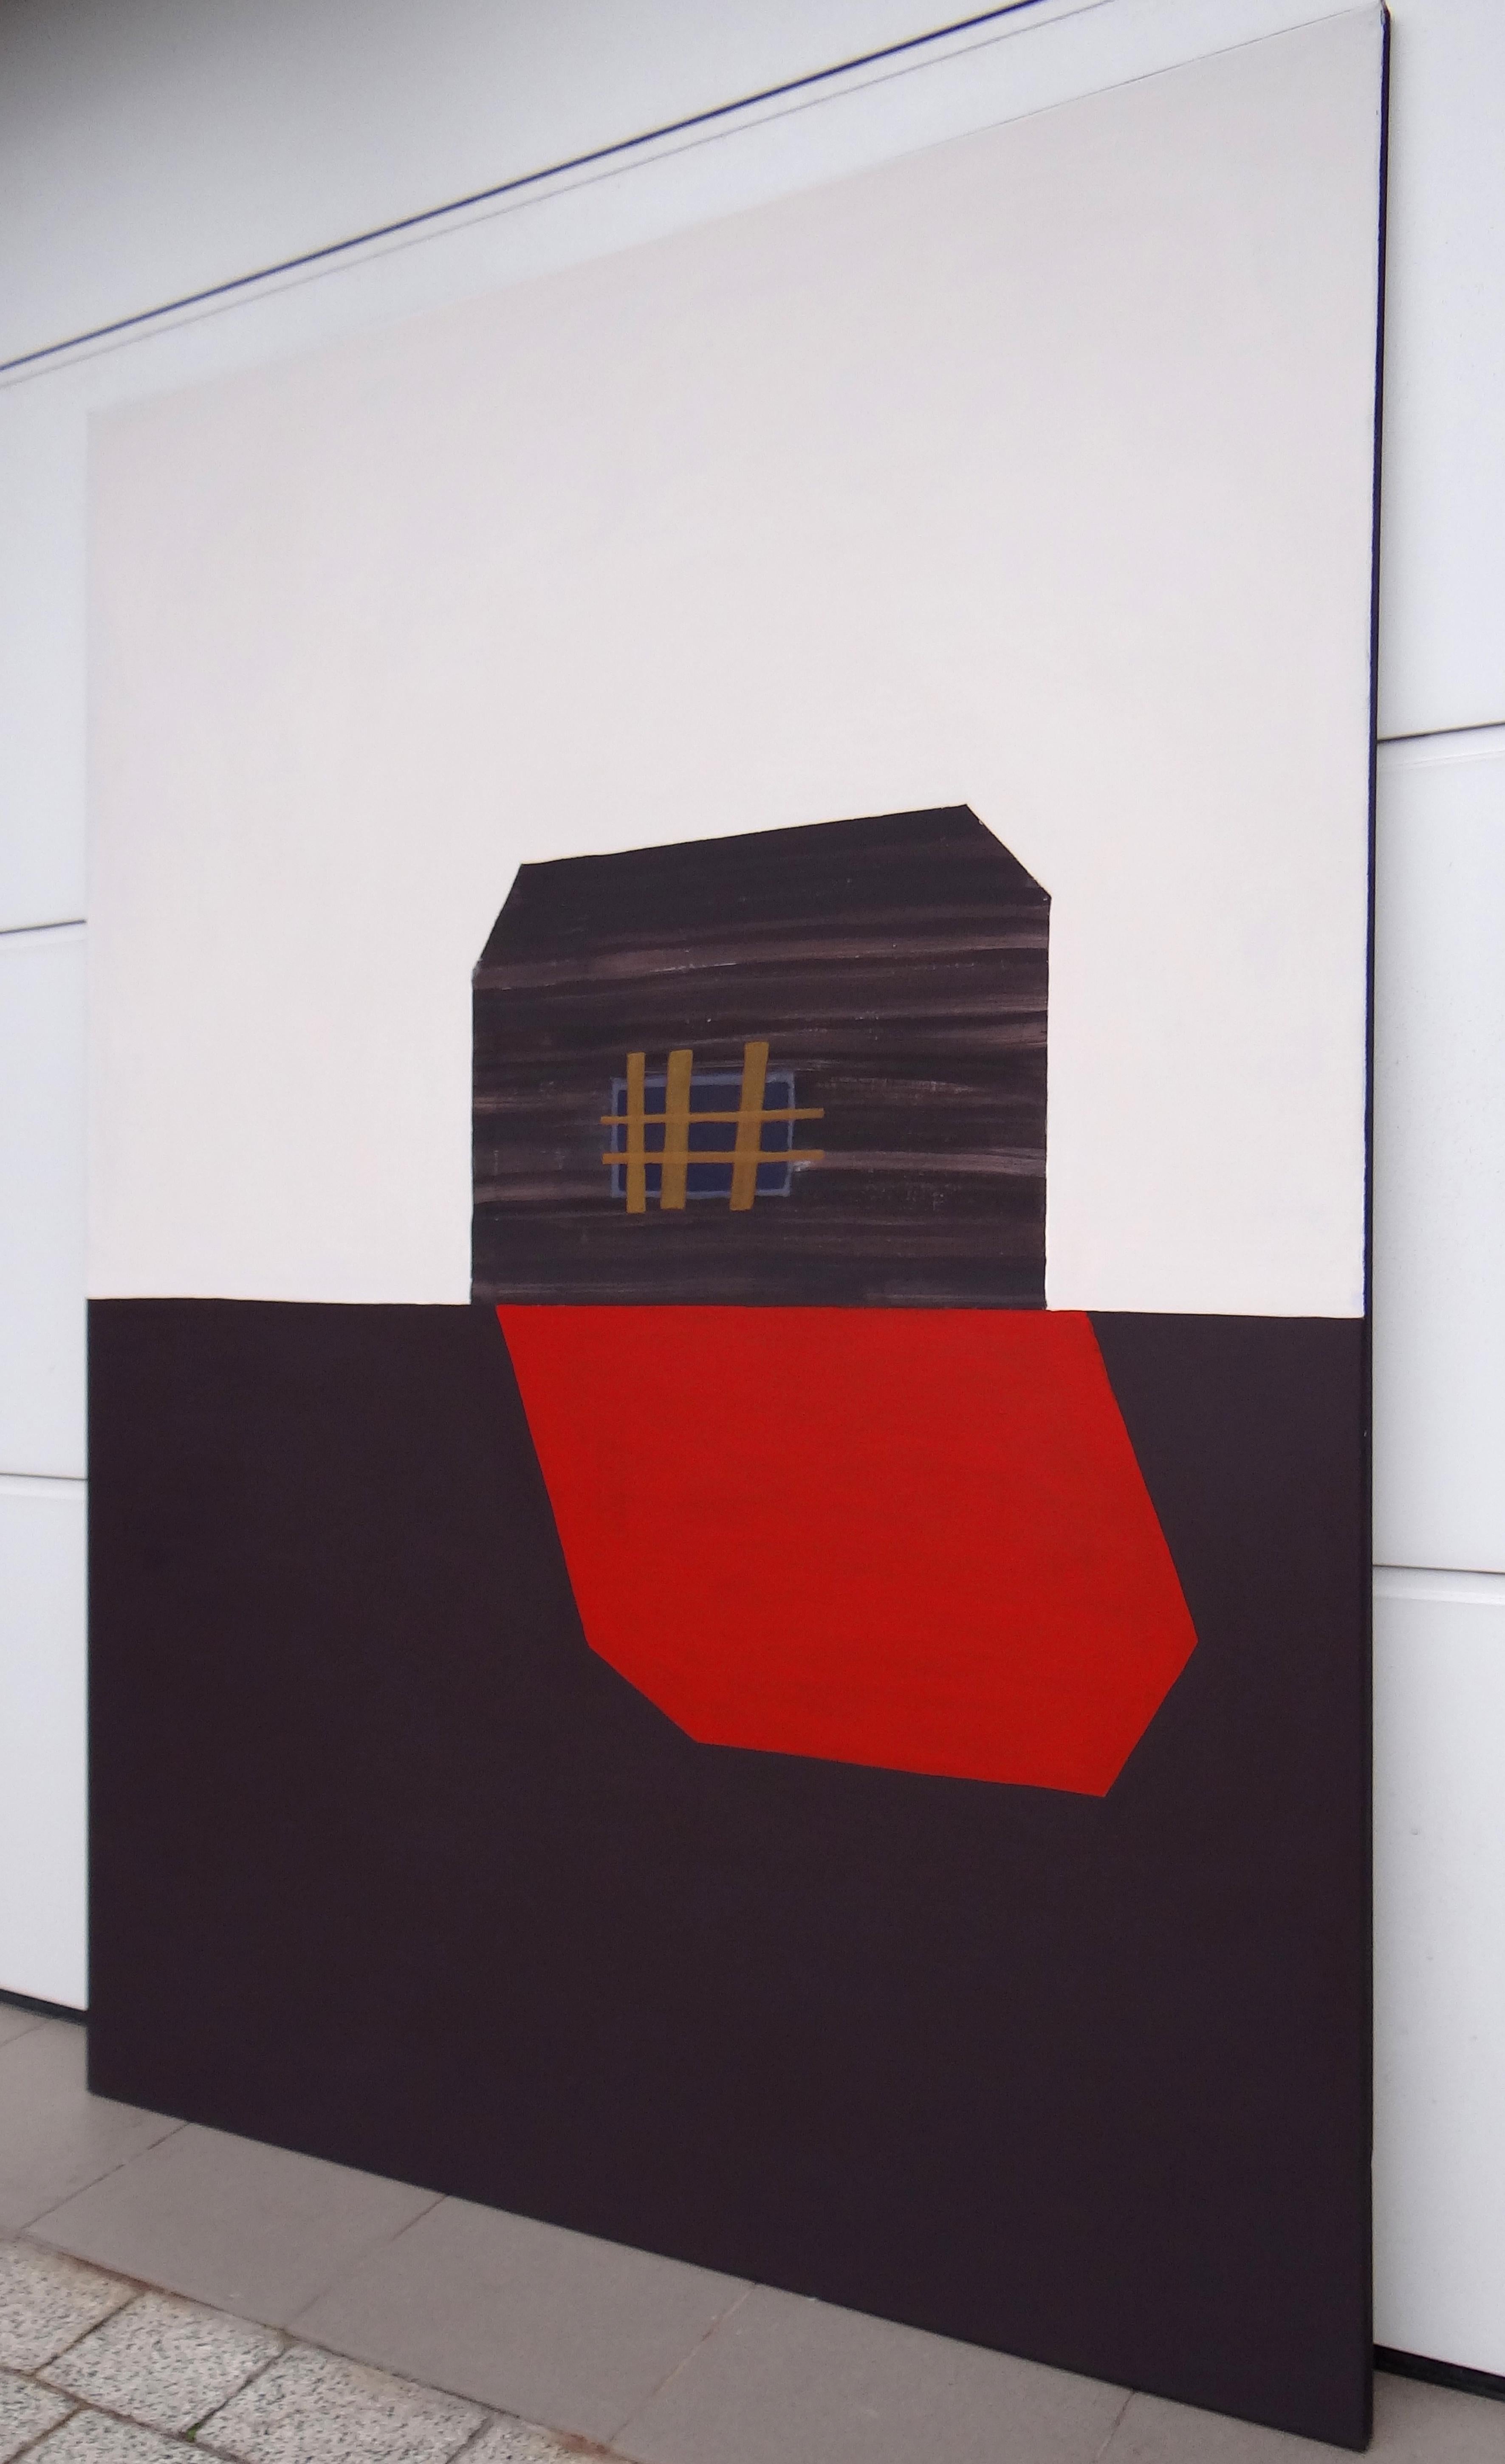 Roter Schatten  Modernes expressionistisches, minimalistisches Gemälde, großformatig – Painting von Joanna Mrozowska